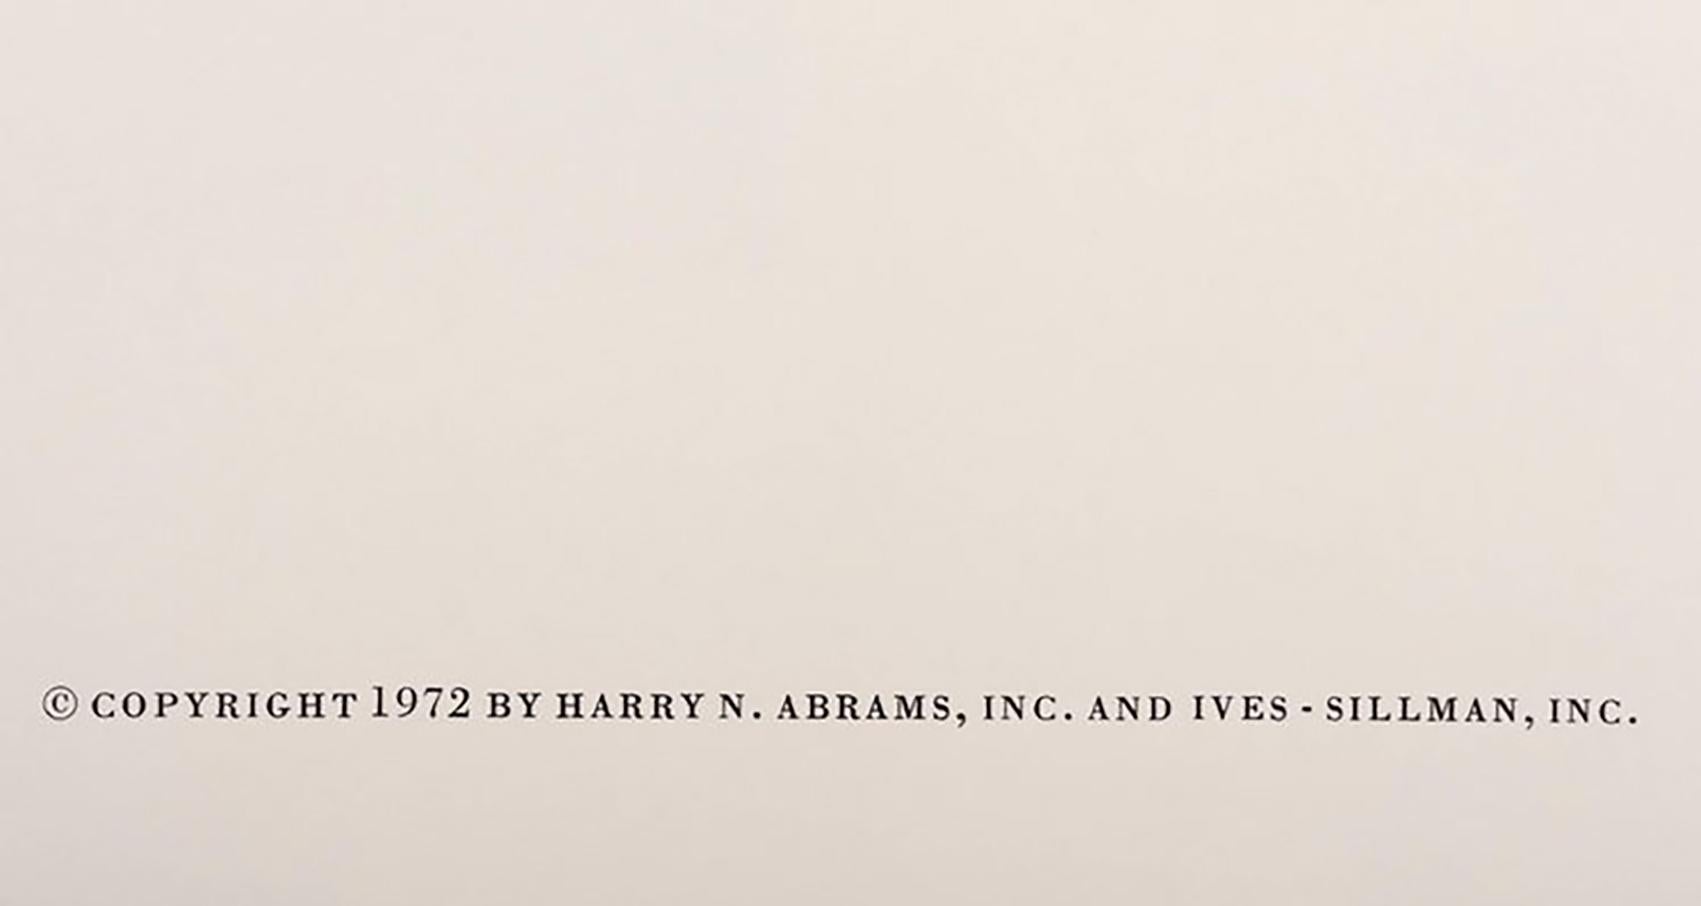 Ein hervorragendes Beispiel für einen zweiseitigen Siebdruck aus Josef Albers Formulierung: Artikulation, 1972. Dieses Beispiel ist Portfolio 1 aus Ordner 12, 1972. 

Aus einer Auflage von 1000 Exemplaren für Harry N. abrams Inc. und Ives Sillman